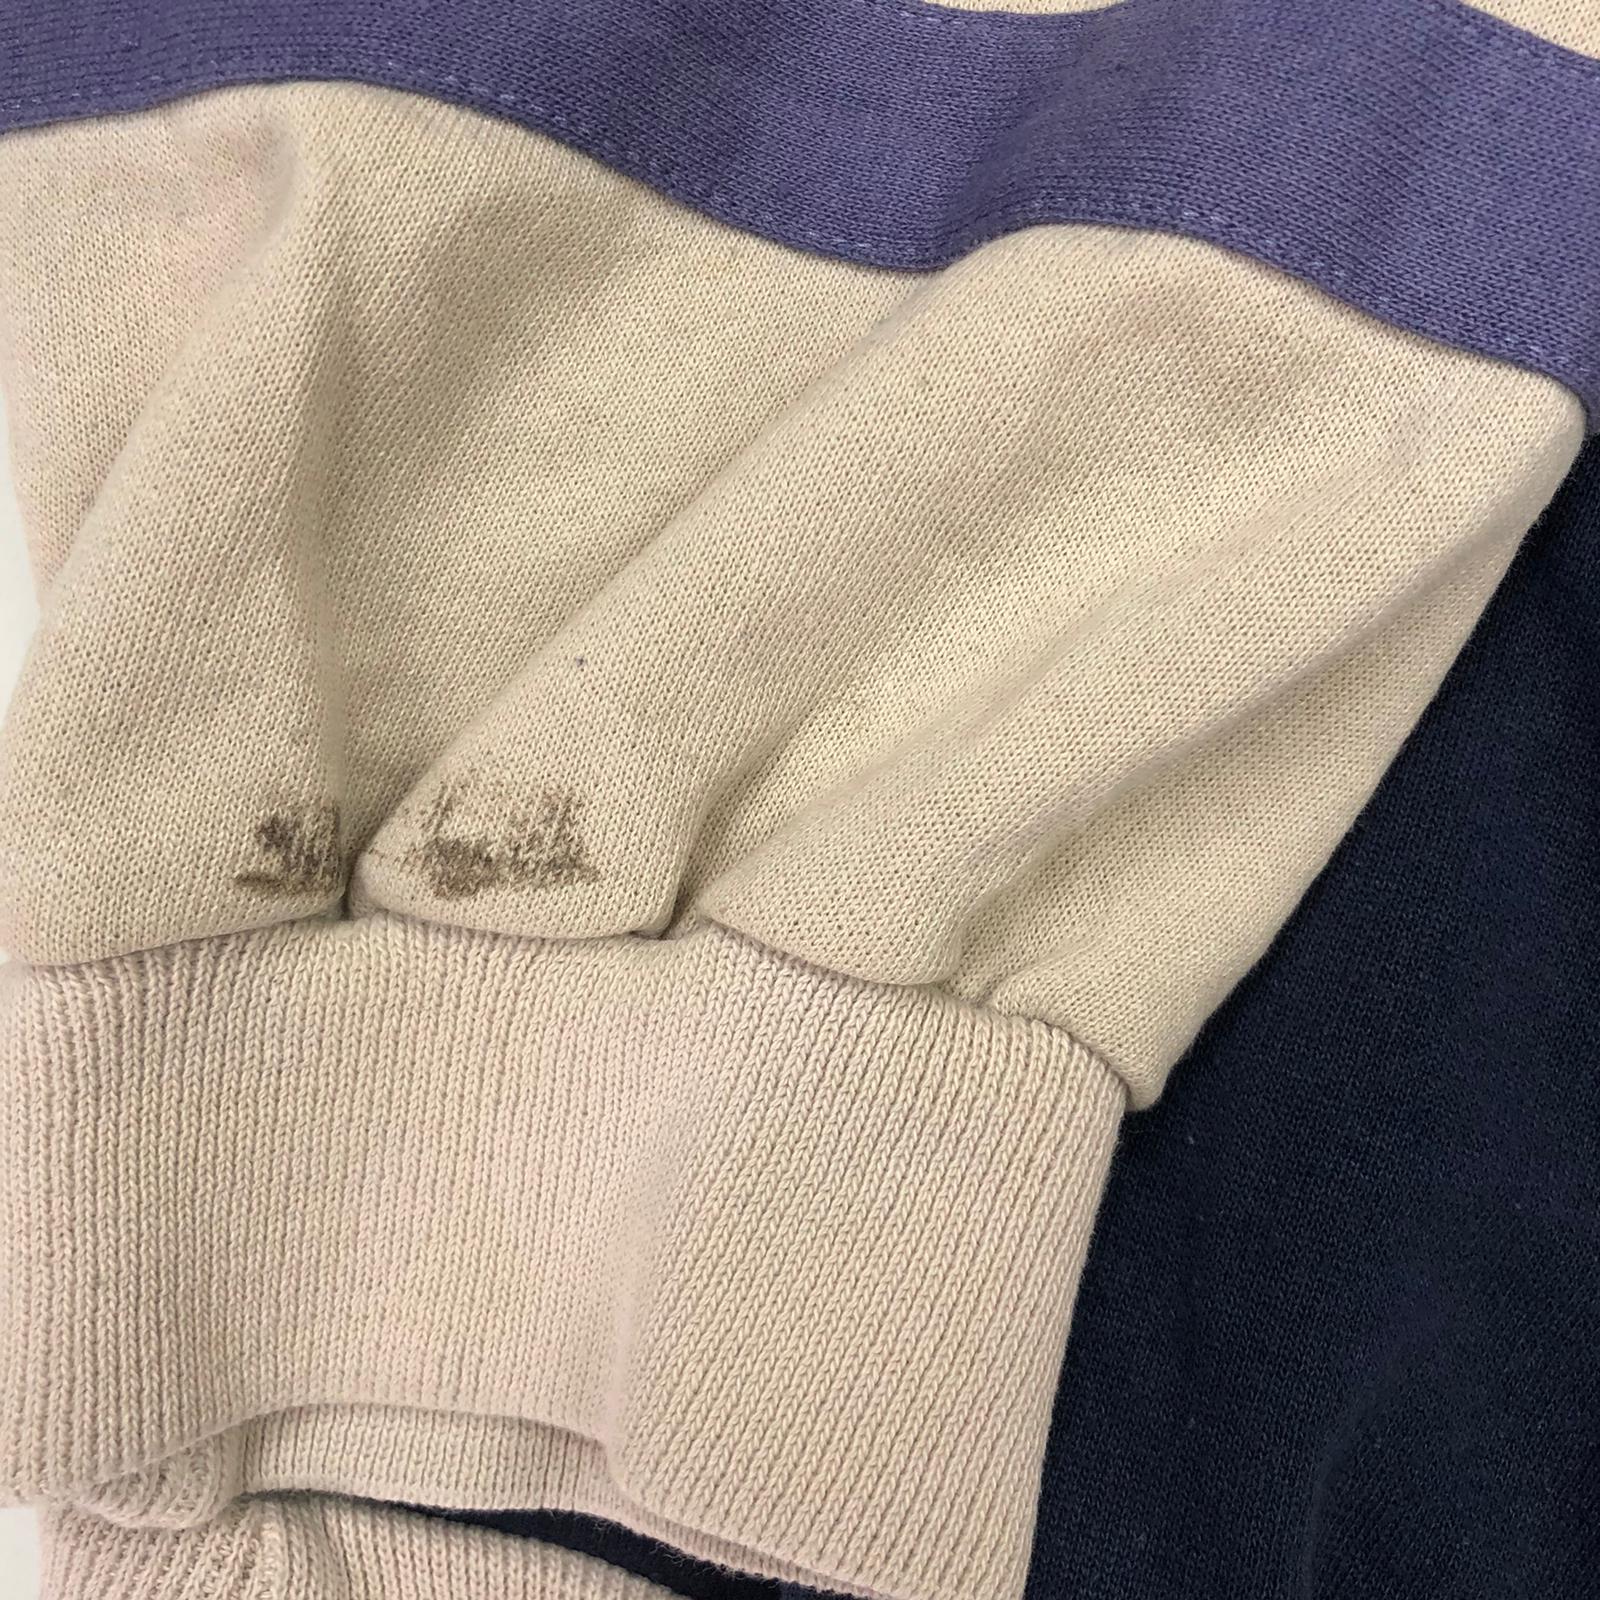 90's Adidas zip up sweatshirt